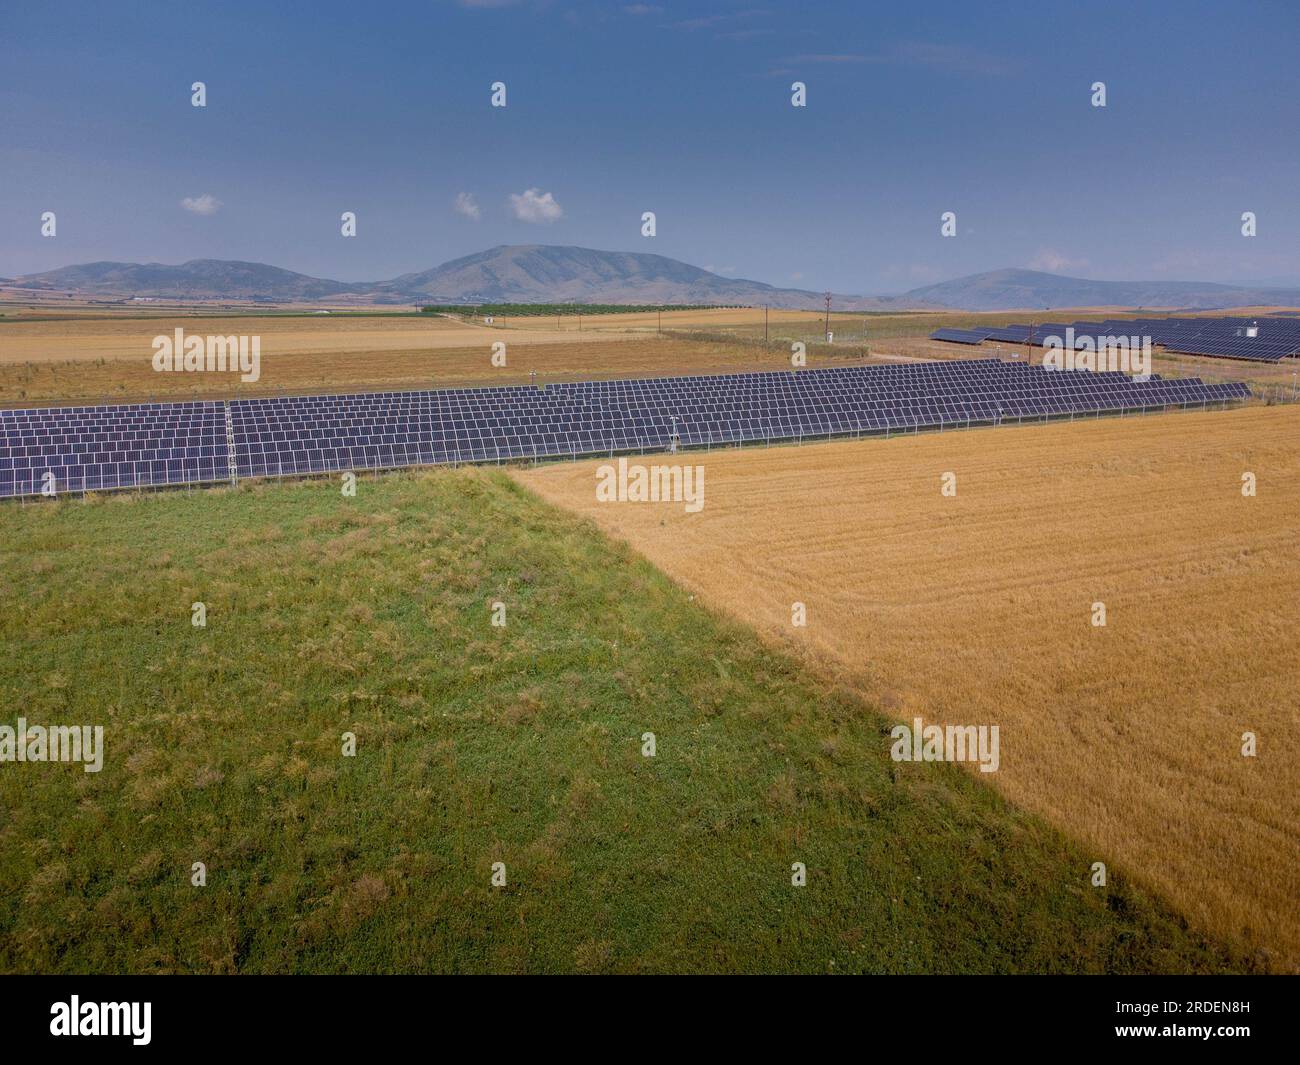 Pannelli solari da fonti di energia rinnovabile o pannelli fotovoltaici nei campi della pianura di Tessalys , Grecia. Foto Stock